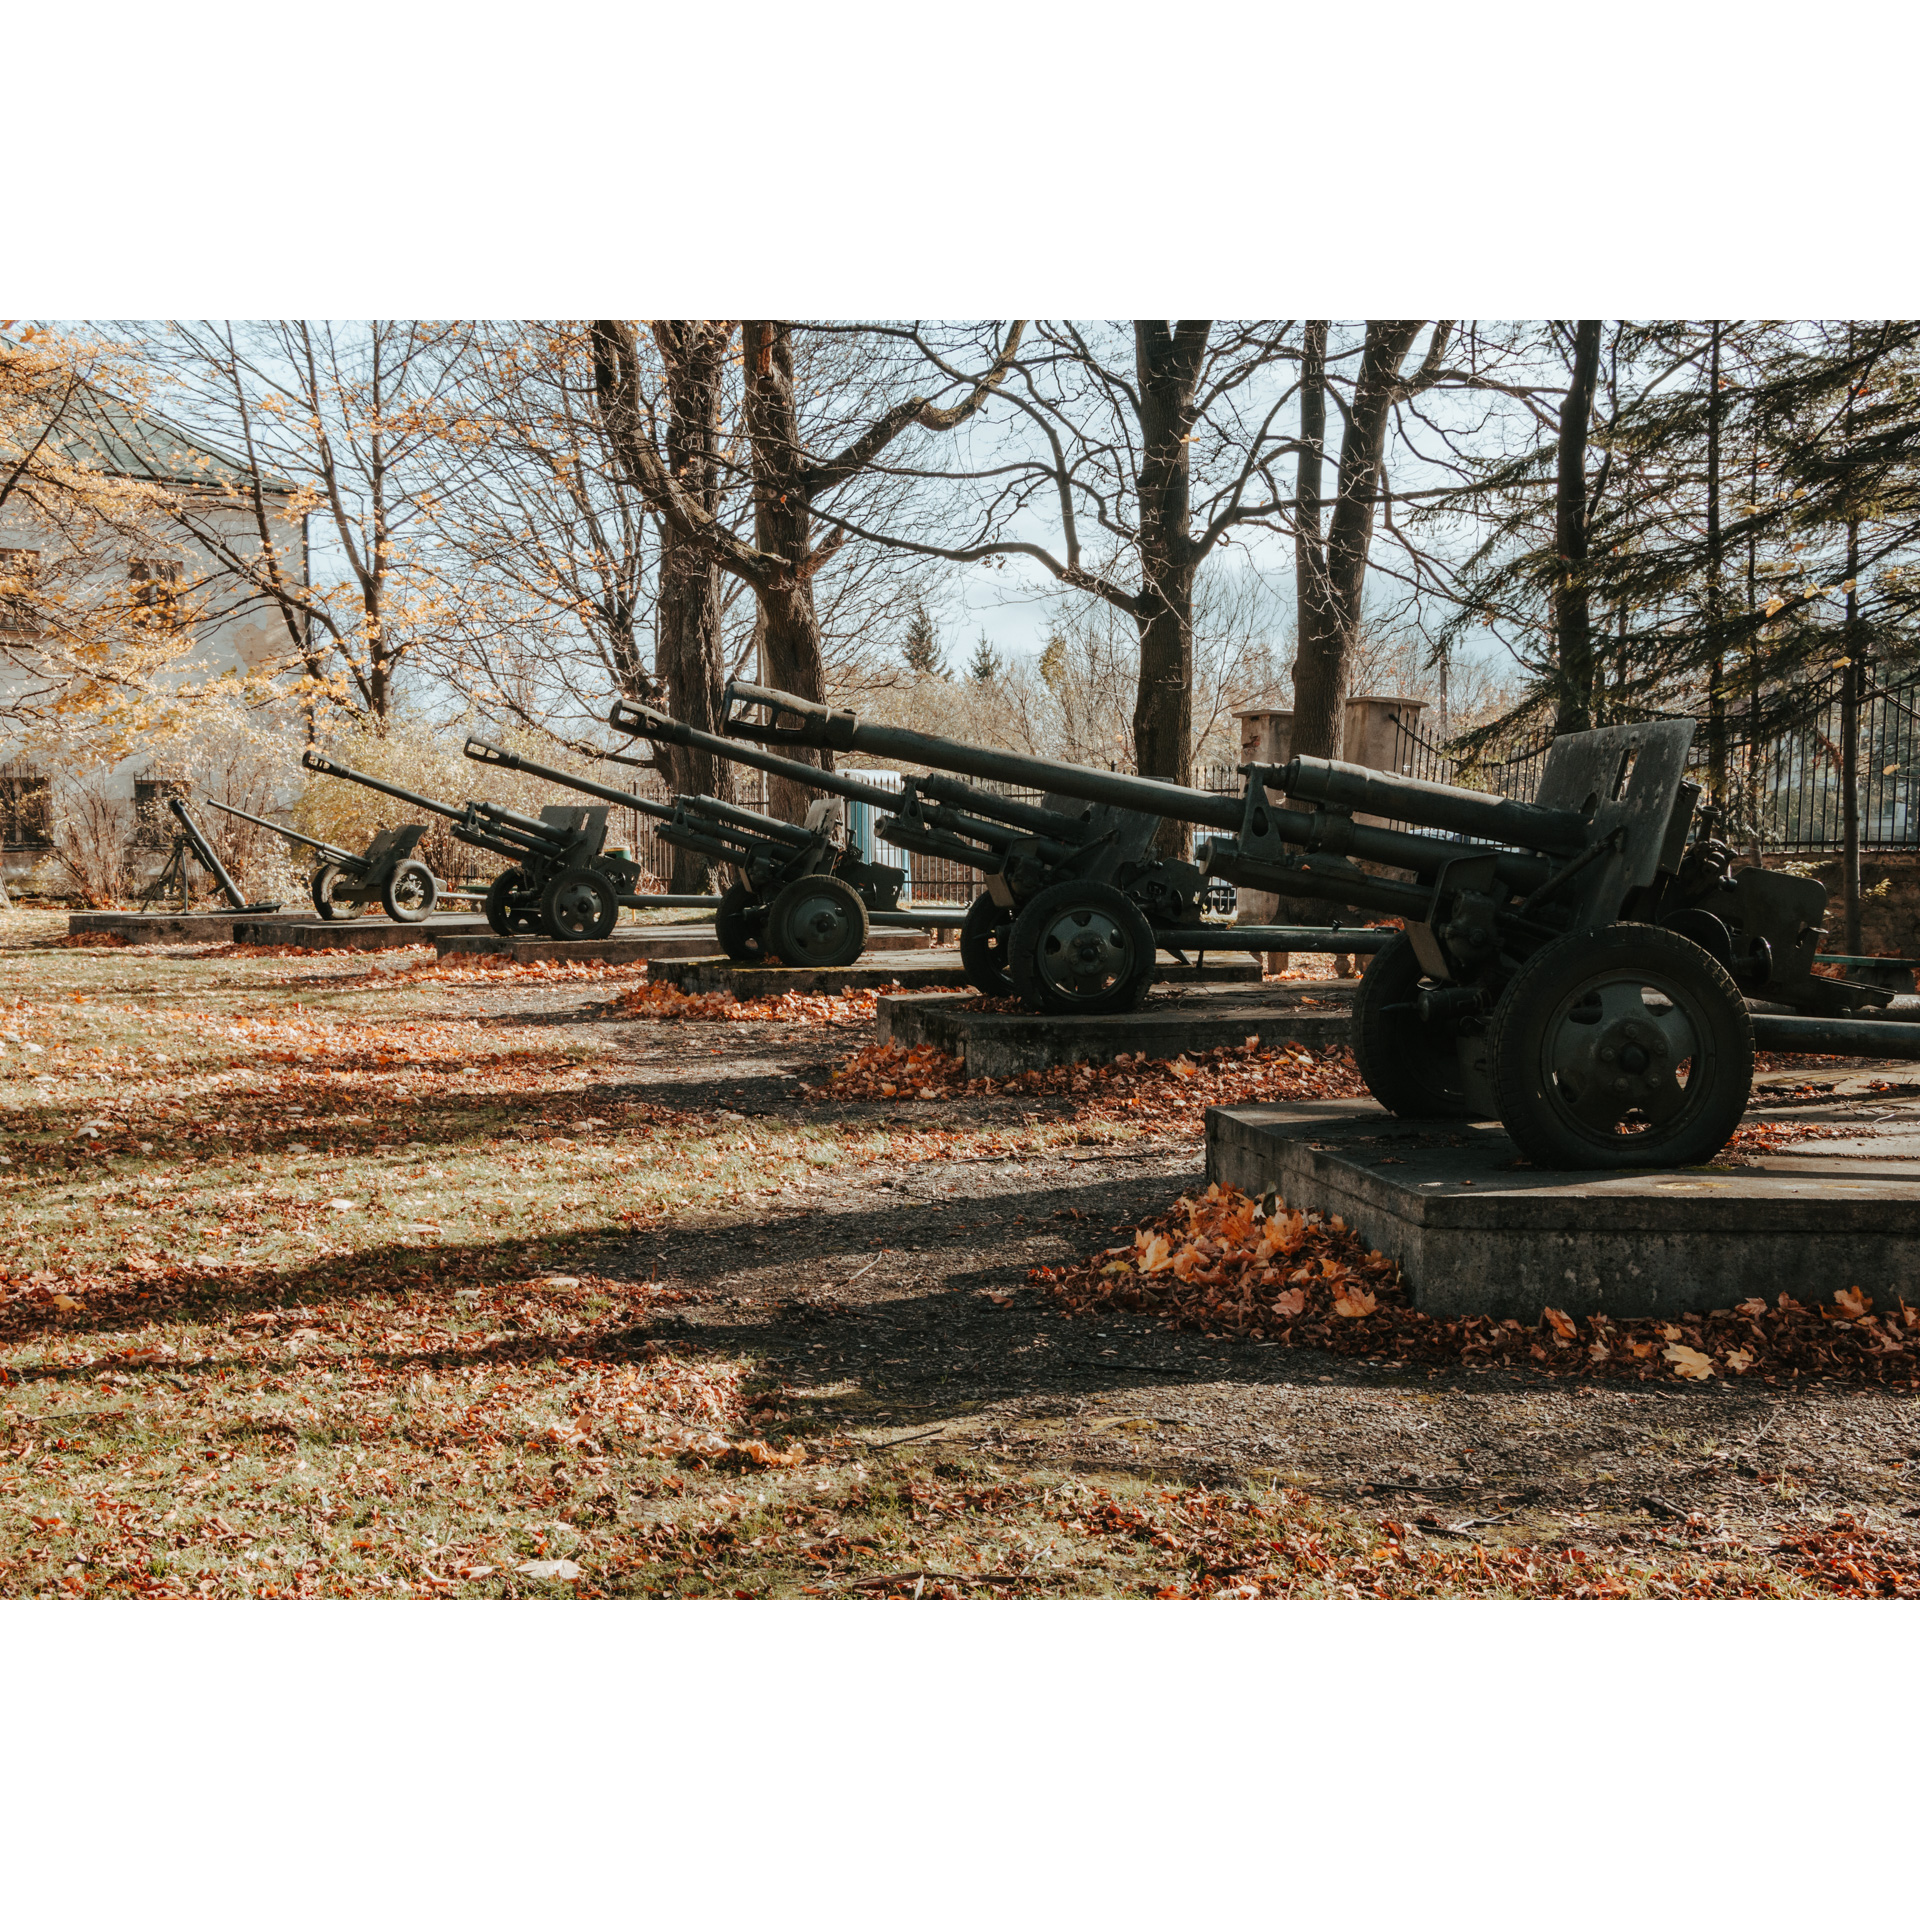 Pięć dział przeciwpancernych na murowanych podestach, stojących na polanie wśród drzew